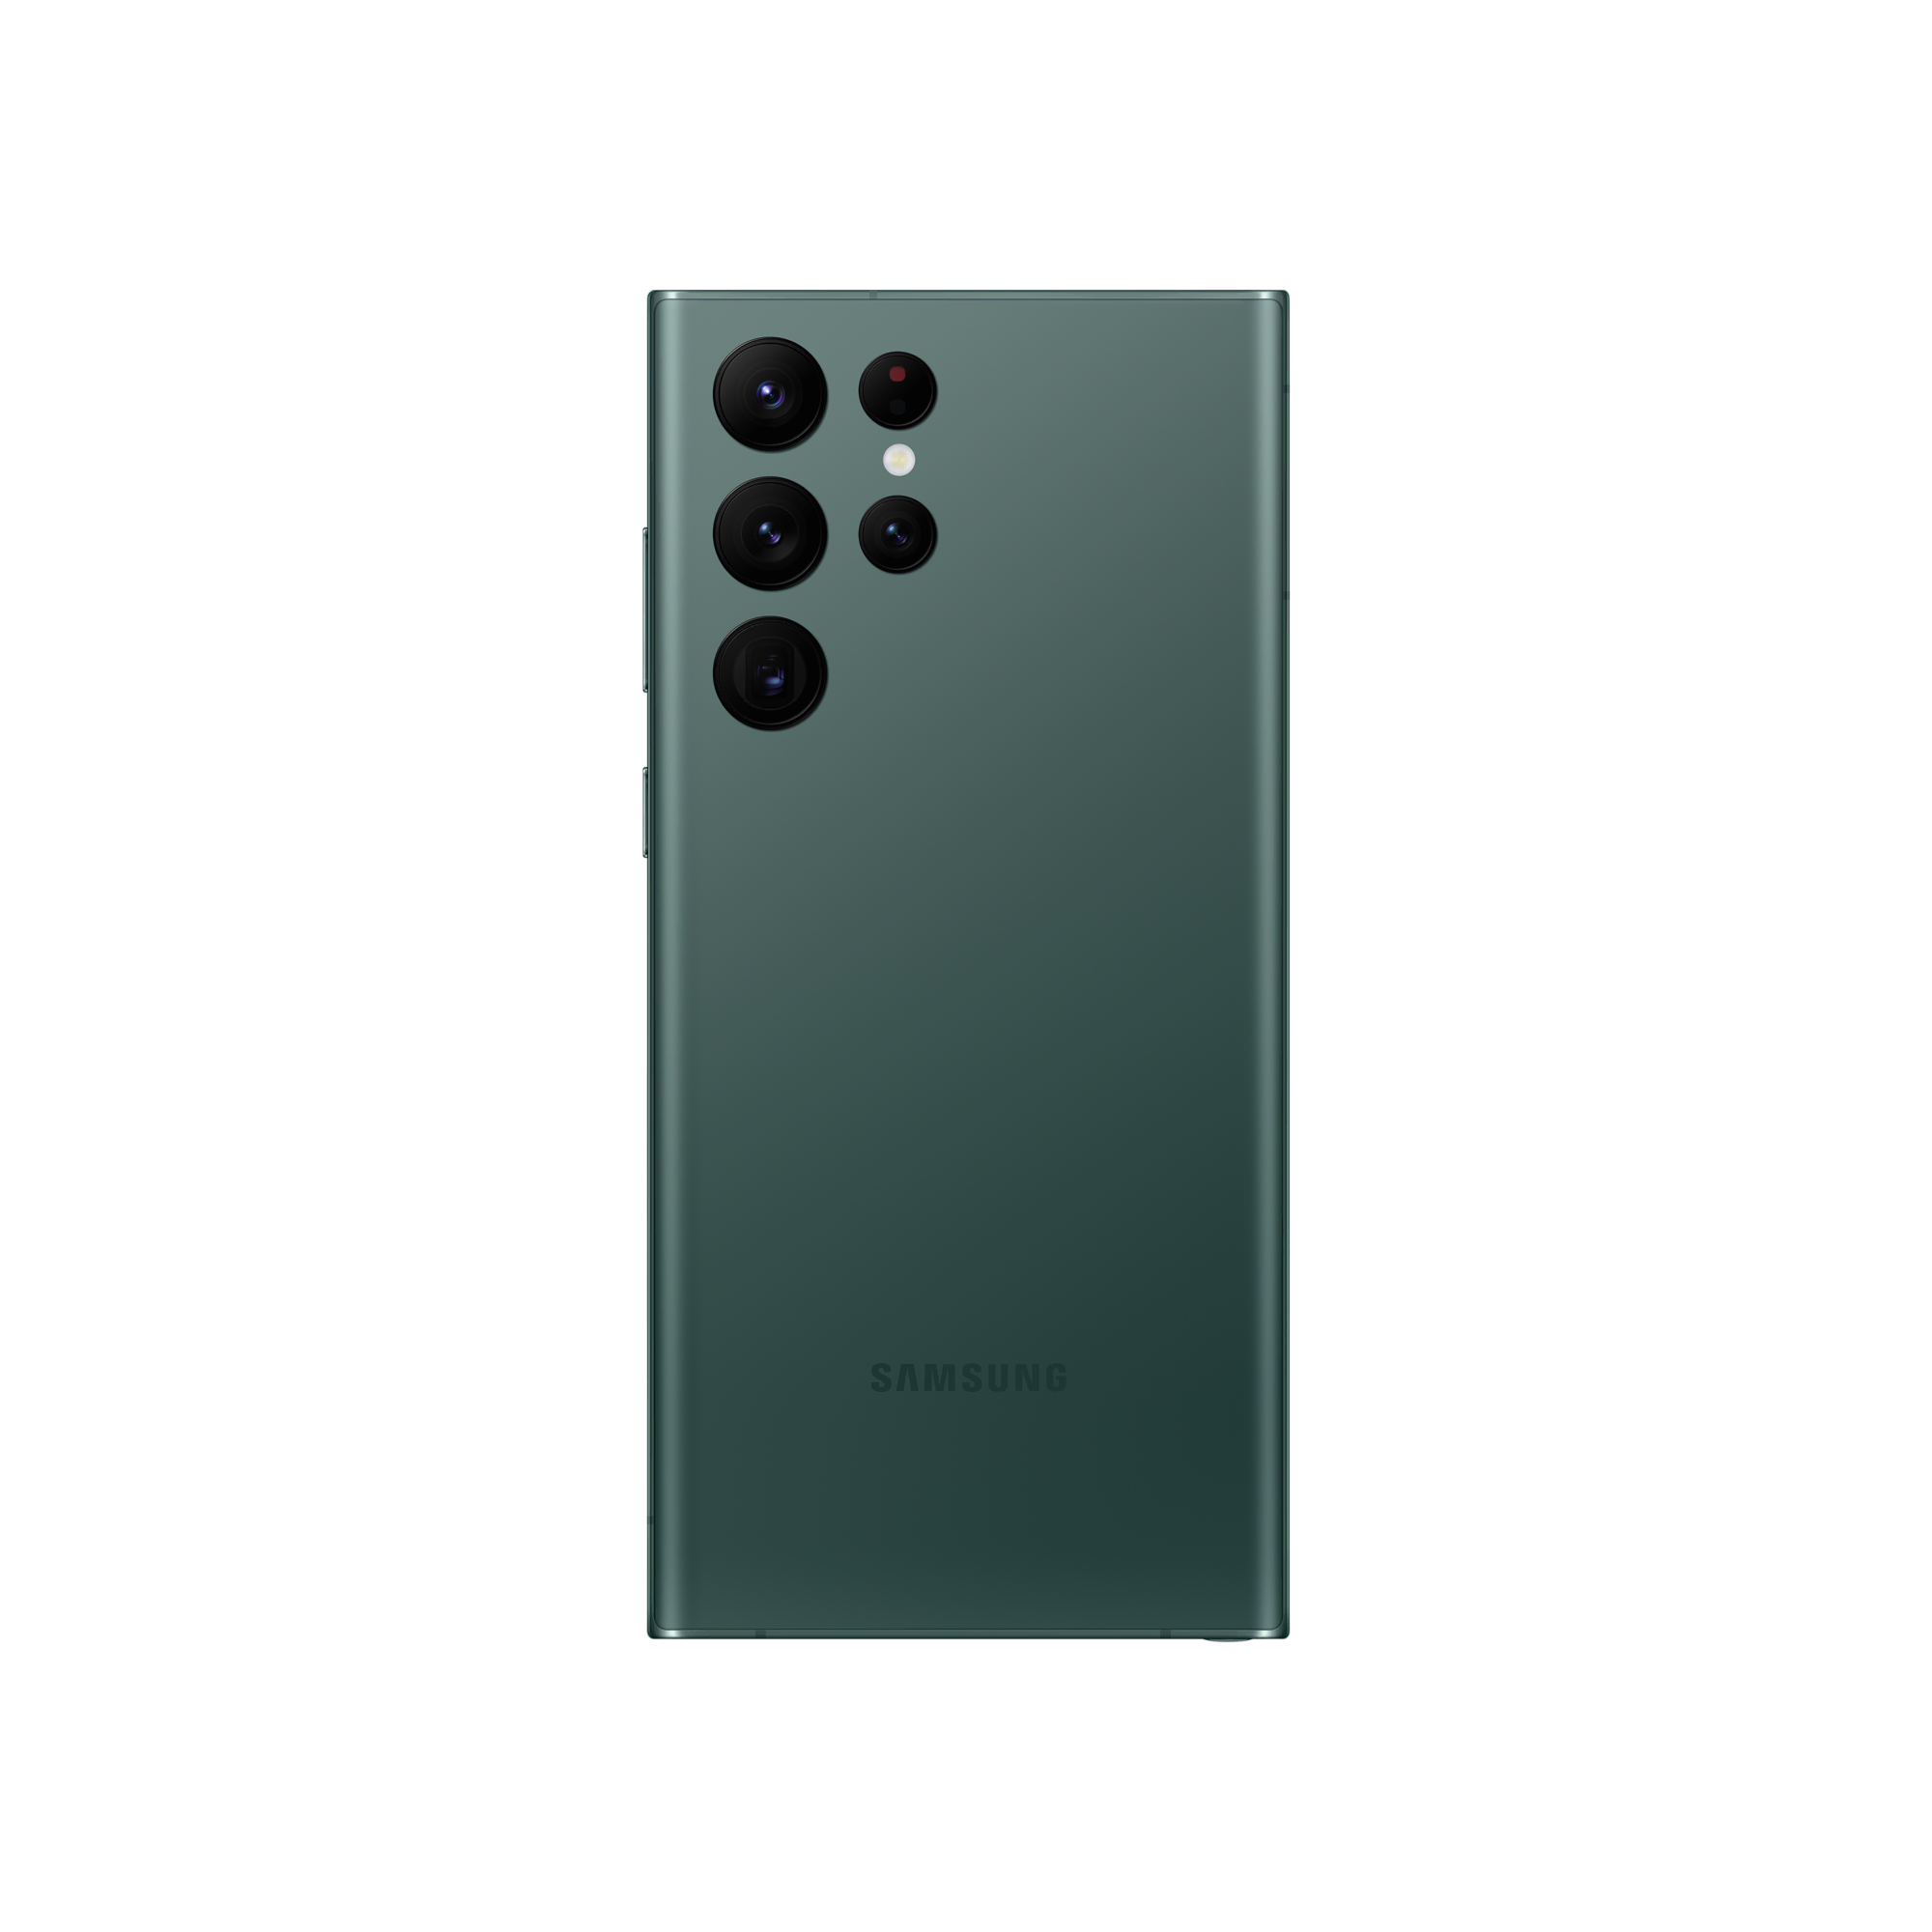 SAMSUNG Galaxy S22 Ultra 256GB Yeşil Android Telefon Modelleri